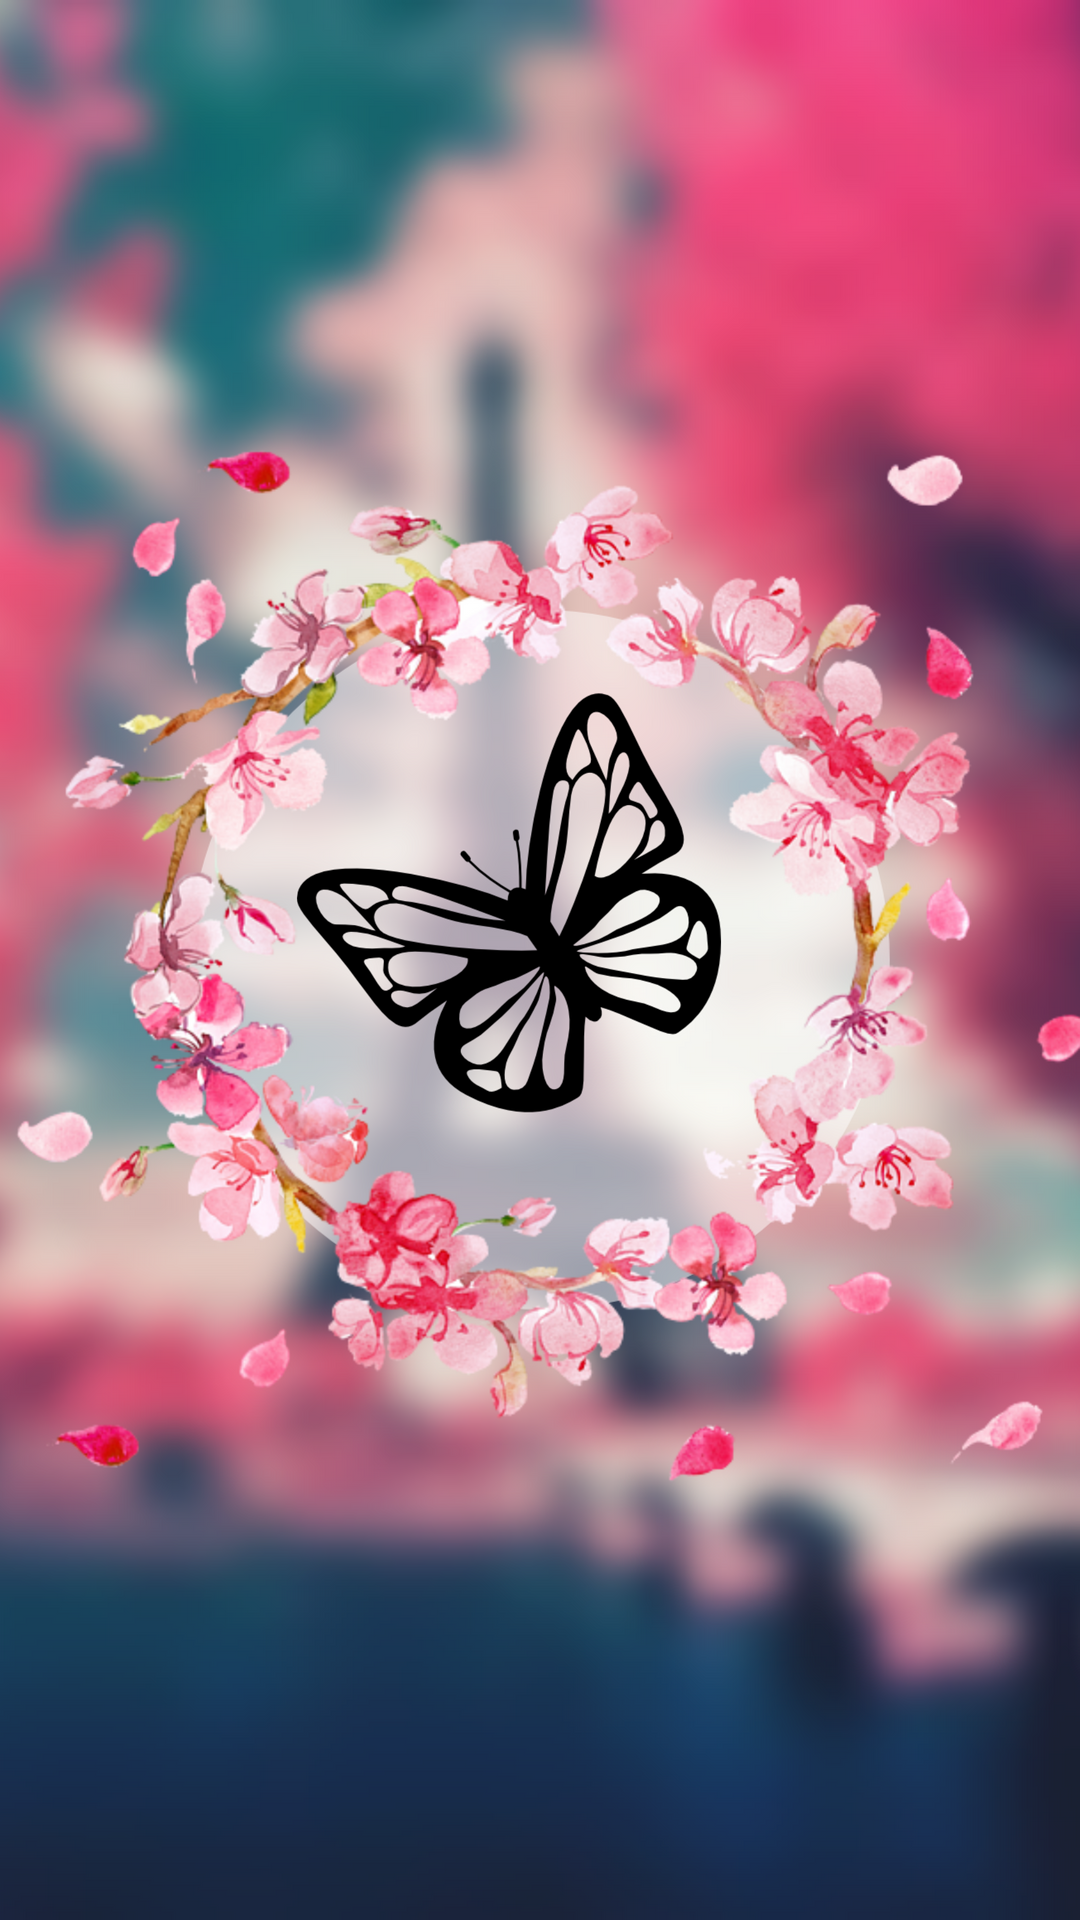 aplicativo de wallpaper,rose,papillon,printemps,ciel,conception graphique